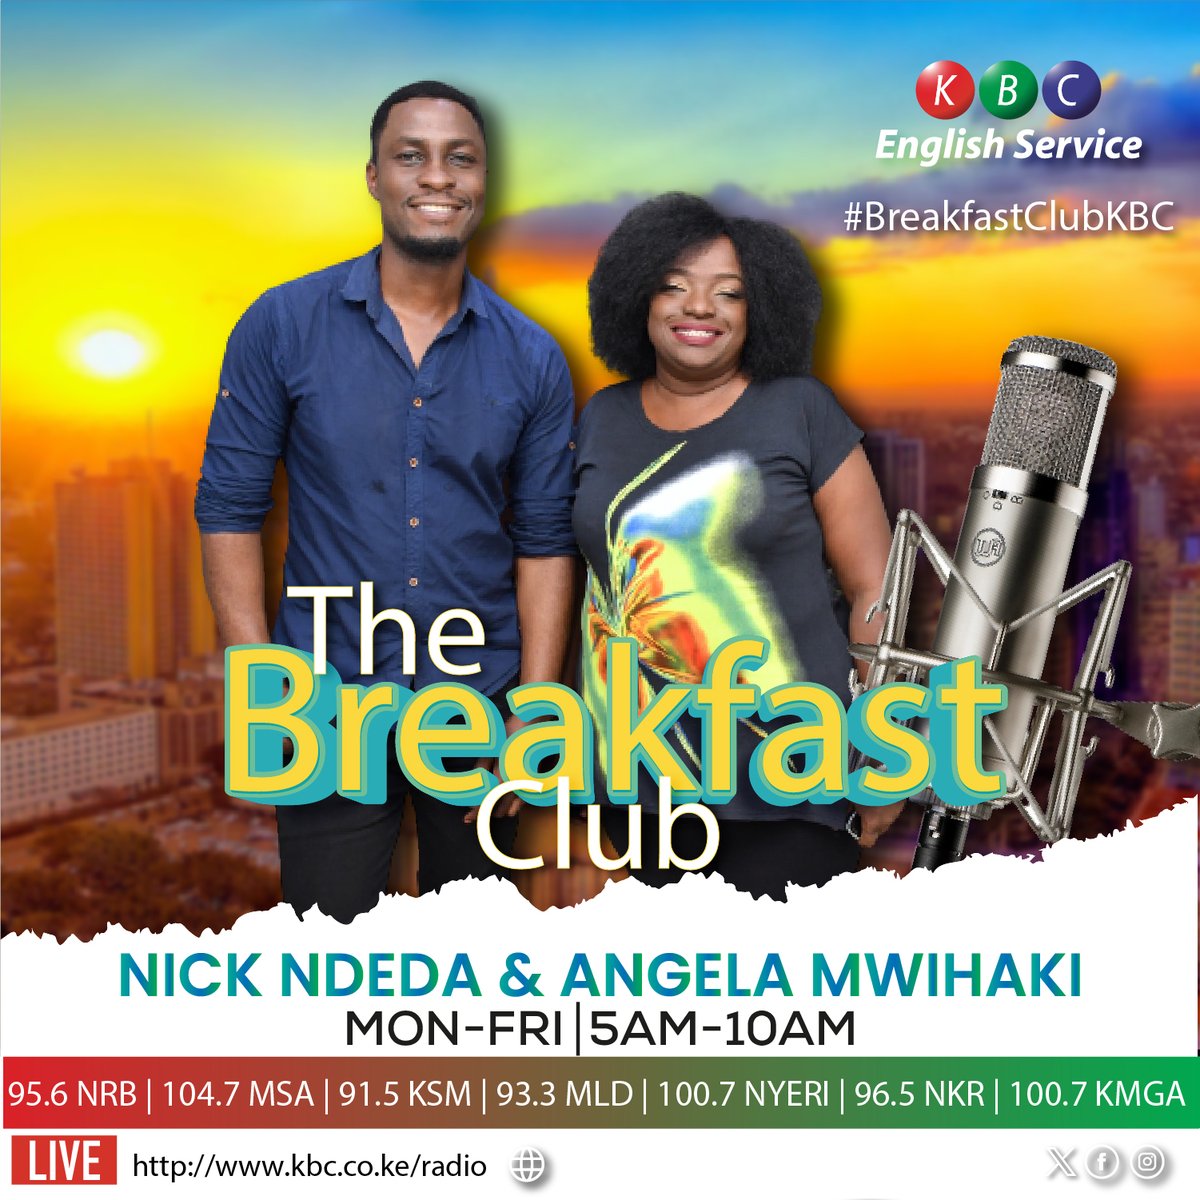 Friday is here! 🥳🤩💯 Link up with Nick Ndeda & Angela Mwihaki on #BreakfastClubKBC tomorrow morning from 0500HRS See you then @NickNdeda | @angelamwihaki